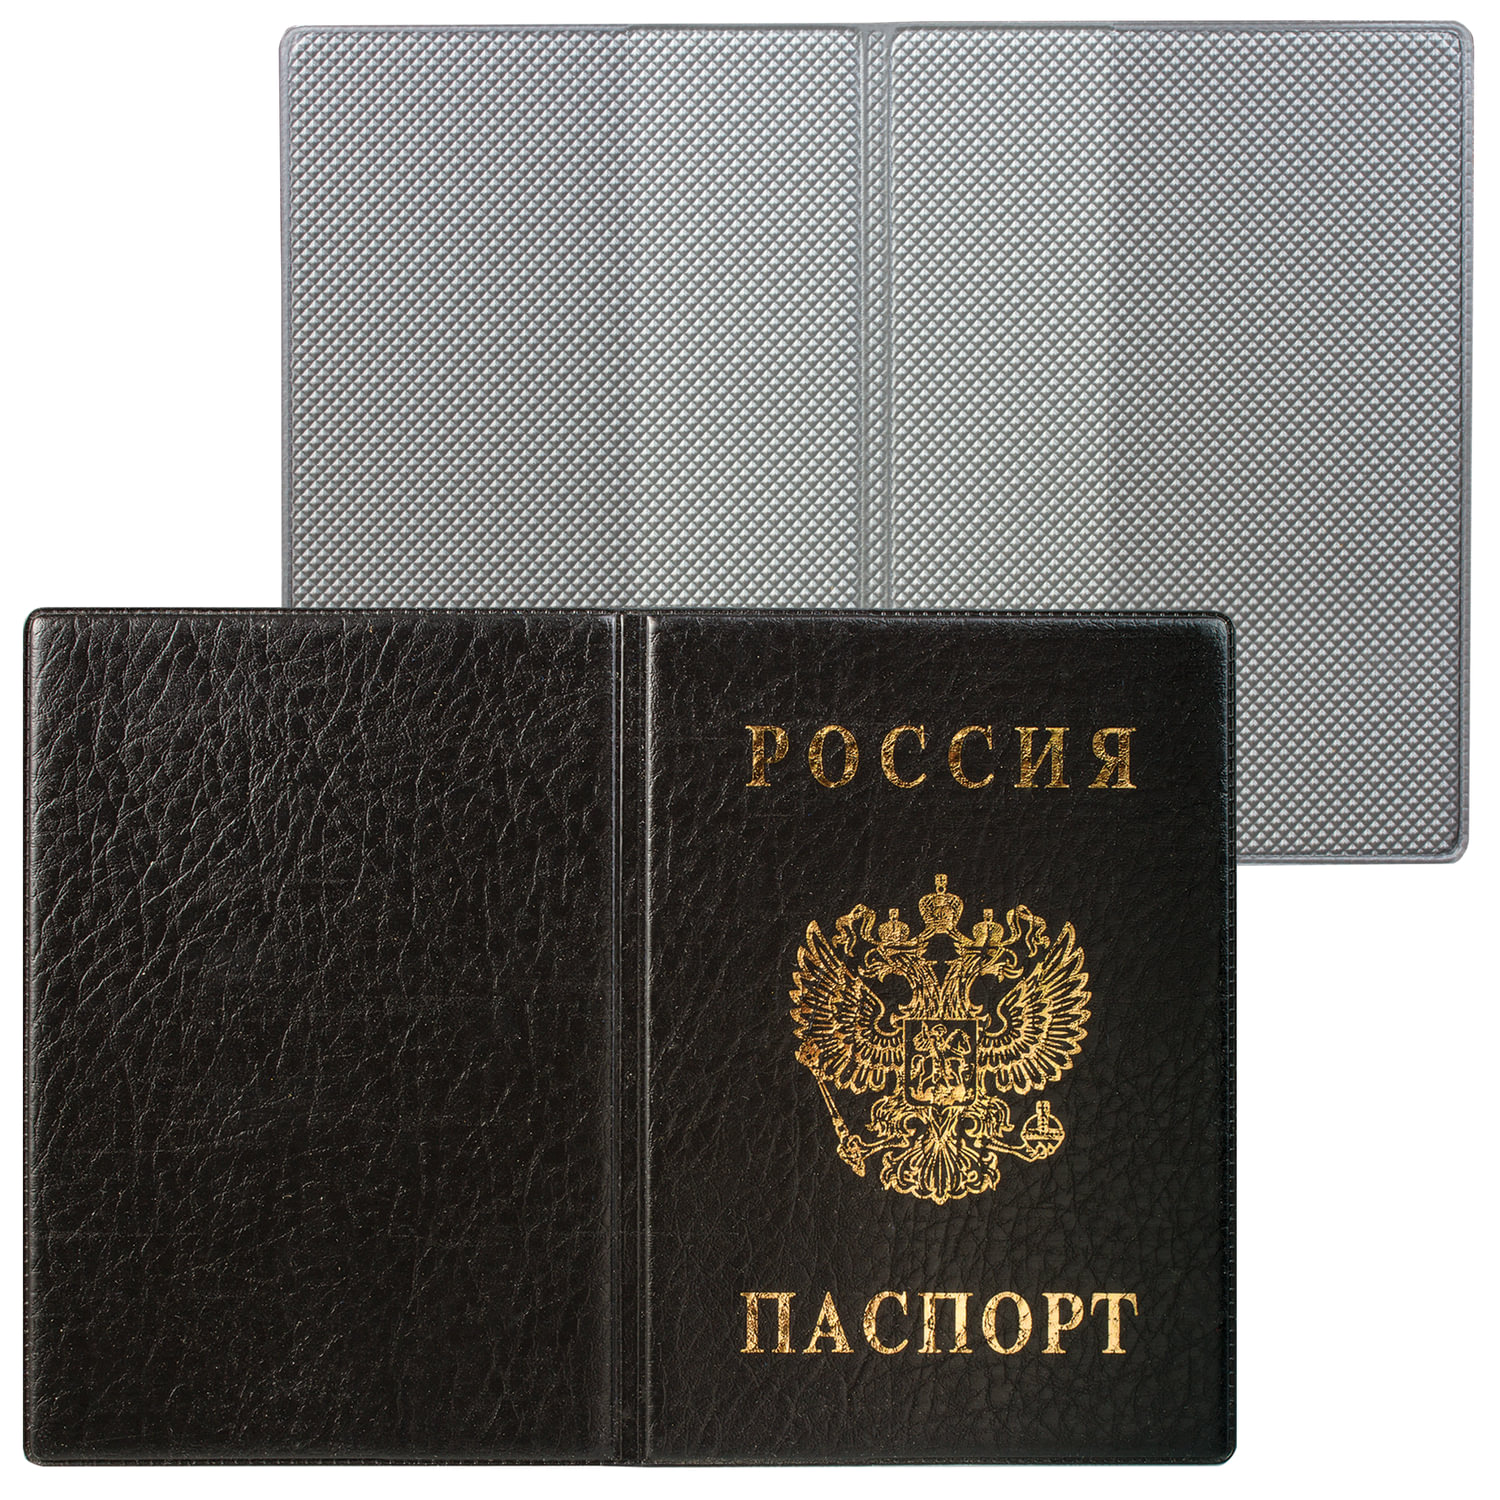 Обложка для паспорта с гербом, ПВХ, черная, ДПС, 2203.В-107, (12 шт.)